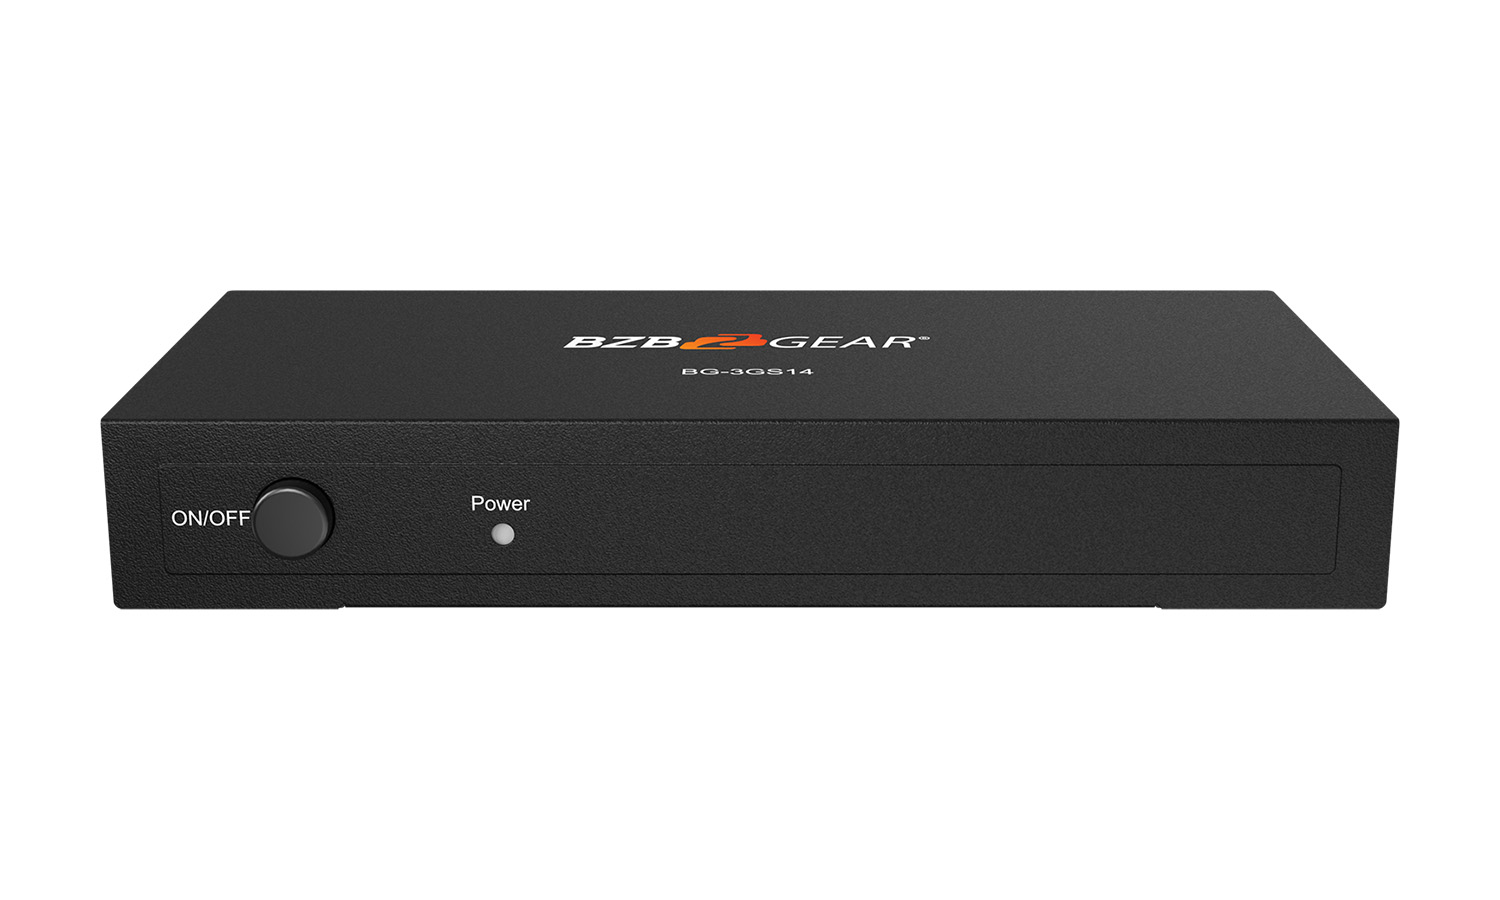 BZBGEAR BG-3GS14 1080P FHD 3G-SDI 1x4 SPLITTER/Distribution Amplifier